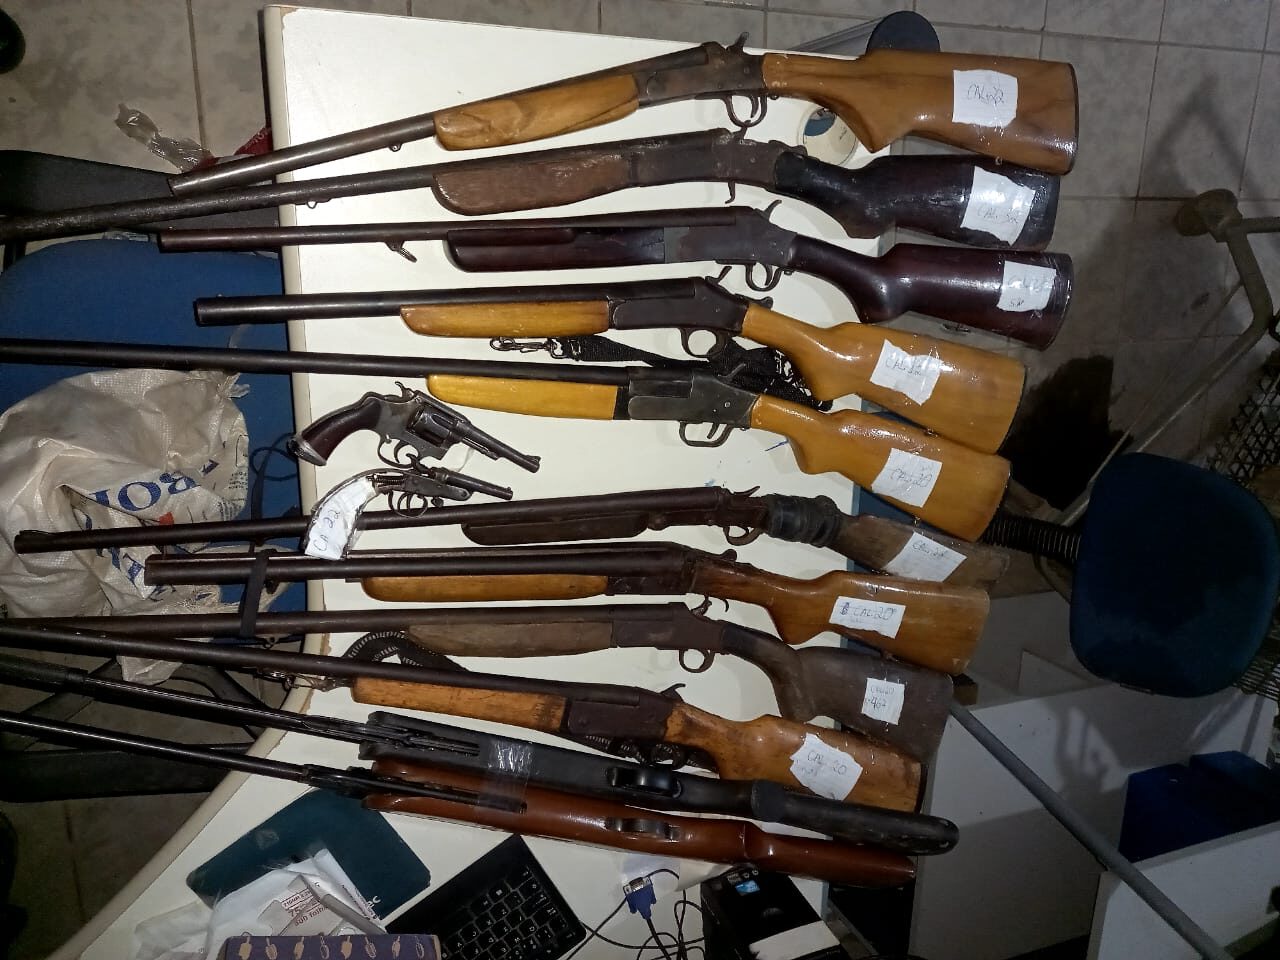 DENÚNCIA: Polícia descobre fábrica de armas caseiras e arsenal é apreendido 